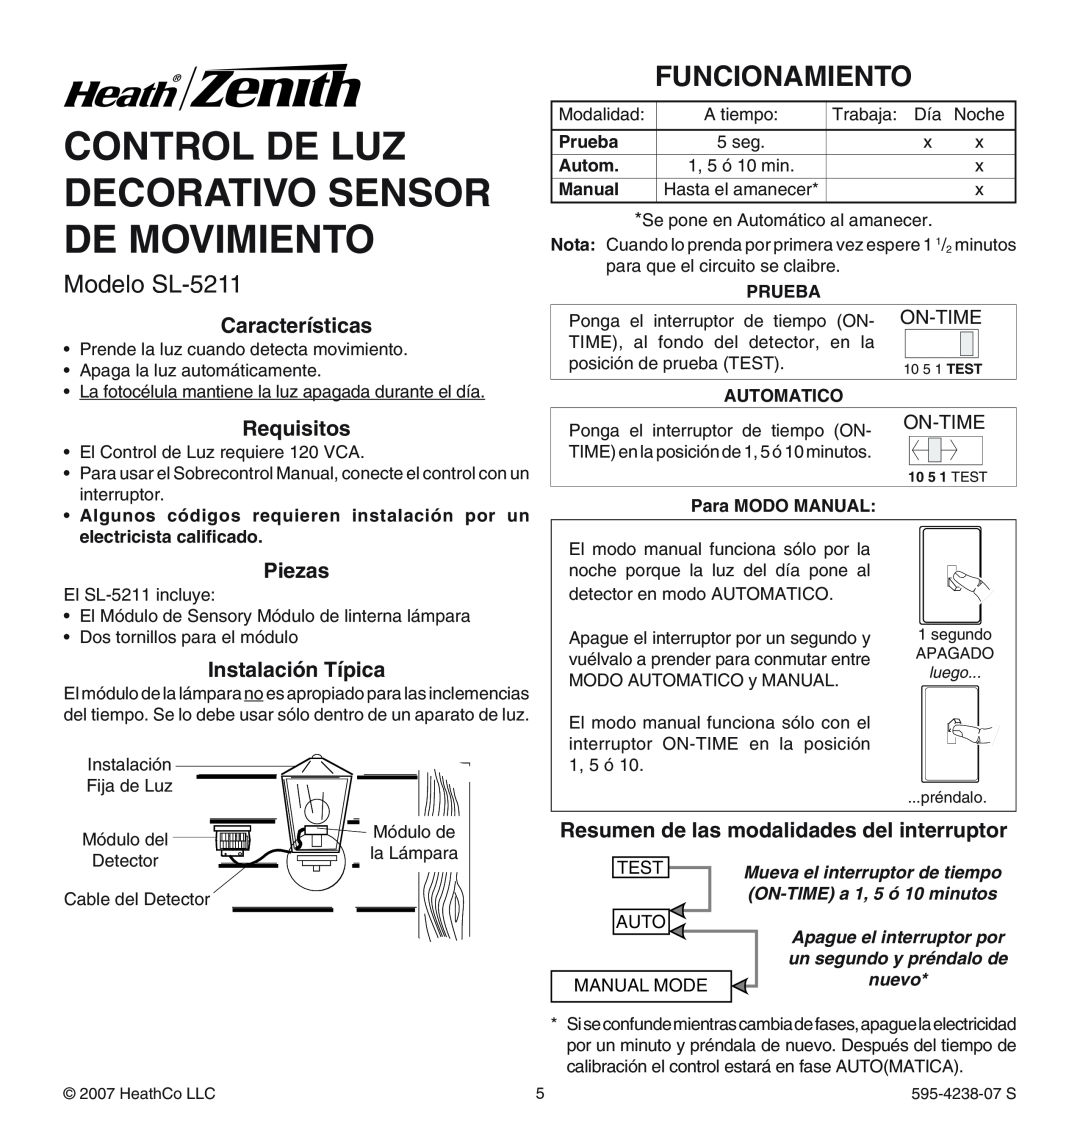 Heath Zenith Control De Luz Decorativo Sensor De Movimiento, Modelo SL-5211, Funcionamiento, On-Time, Prueba, Autom 